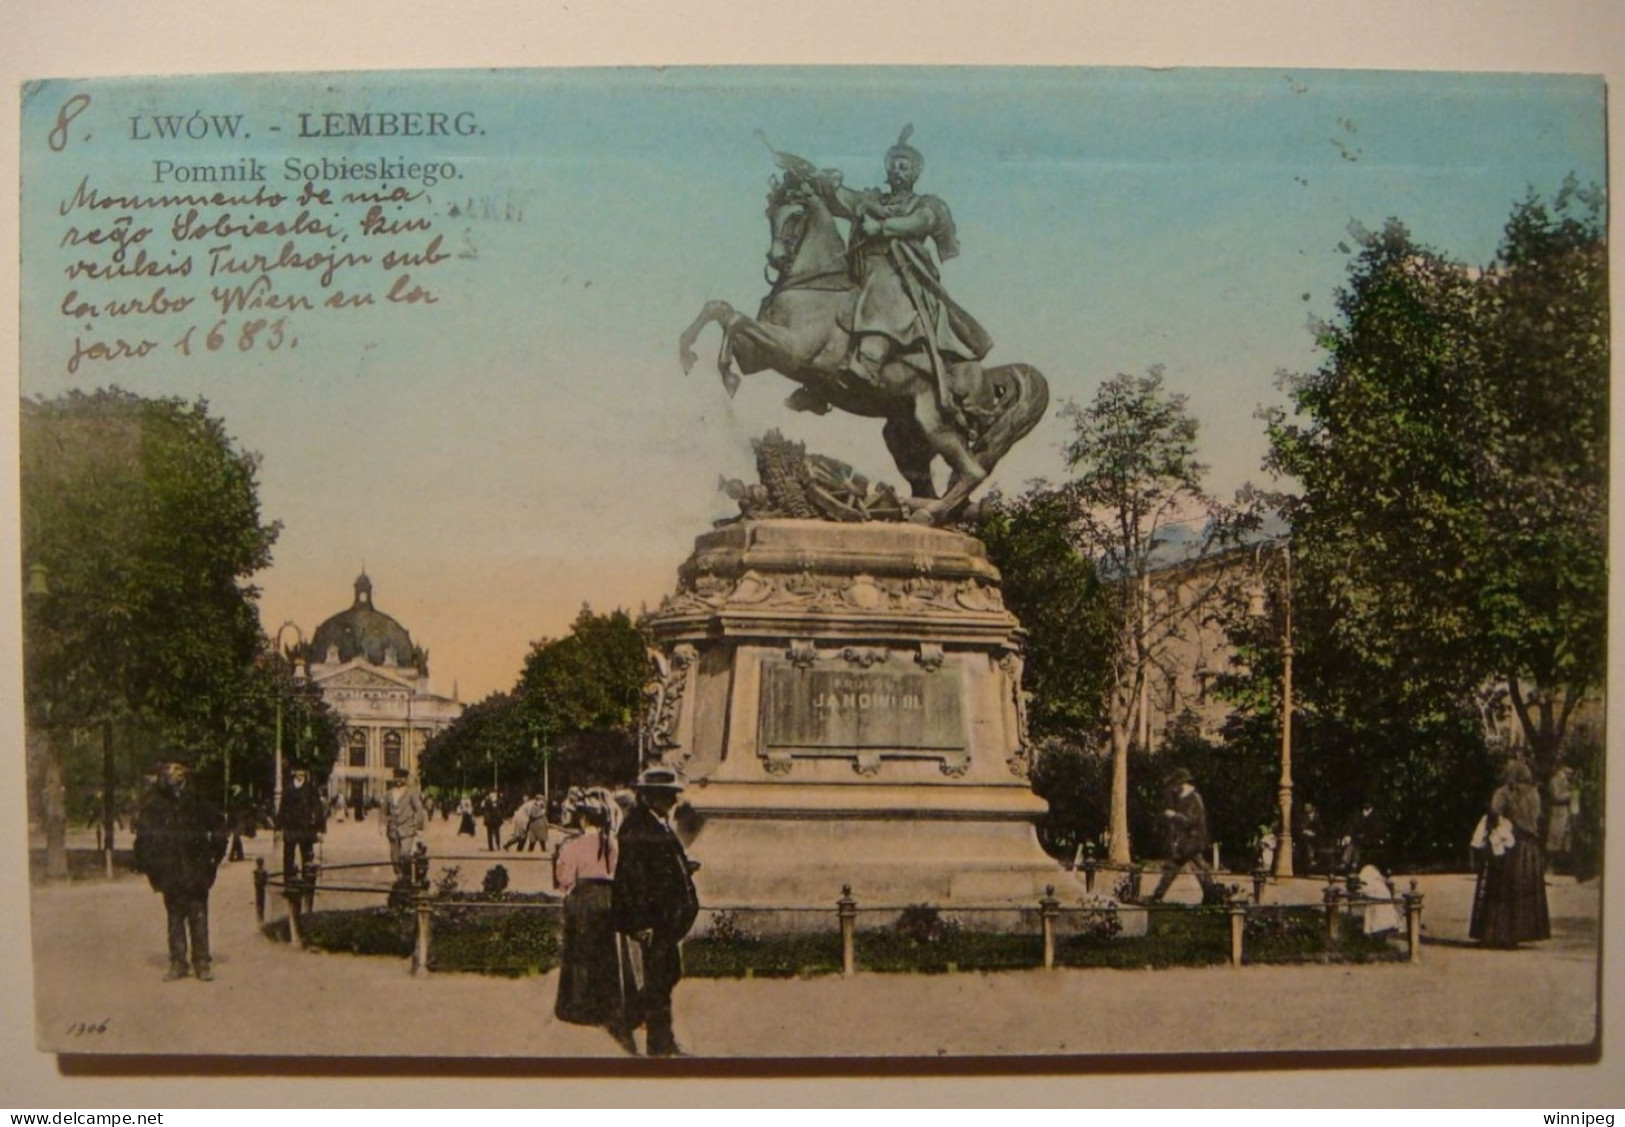 Lwow.Lemberg.Pomnik Sobieskiego.L.&.P.3398.Esperanto,H.M.Nowicki.1910.Poland.Ukraine. - Ukraine